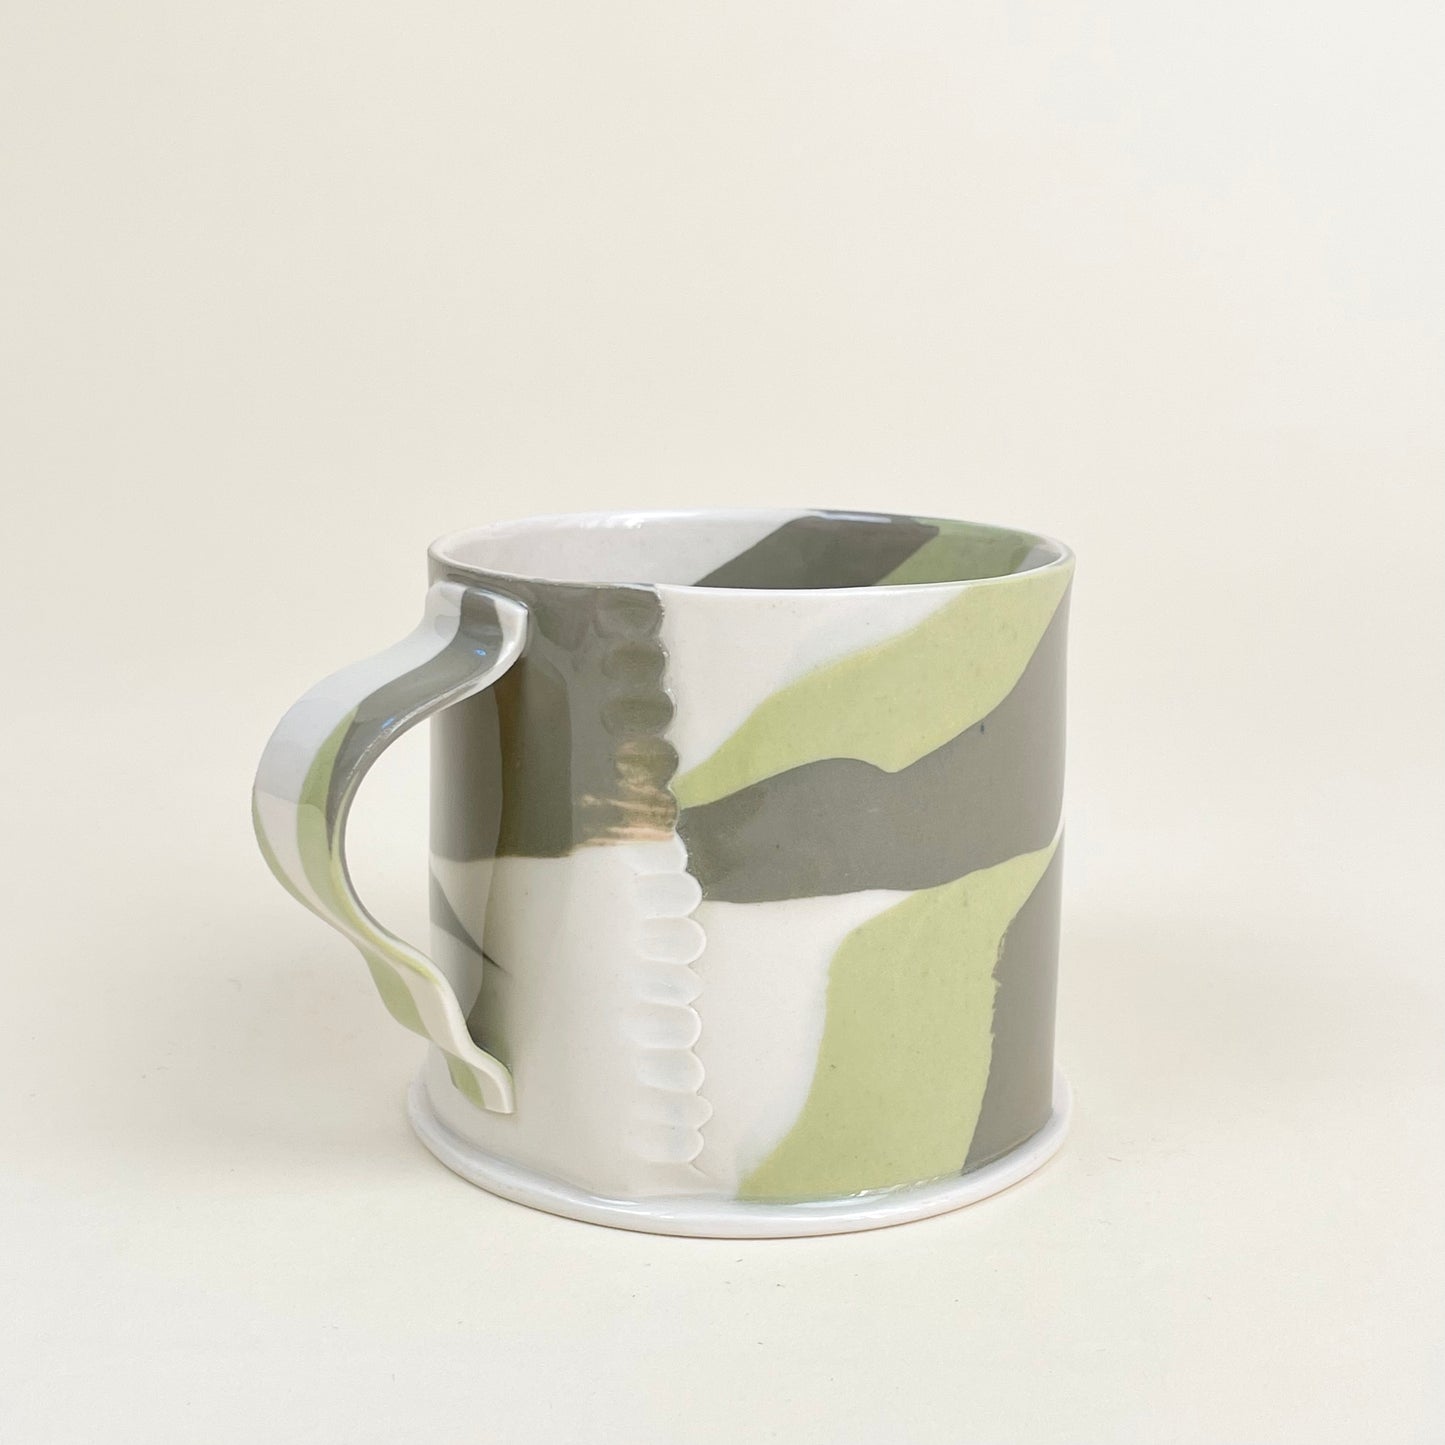 Ceramic mug by Emma Berzén (cream and greens)